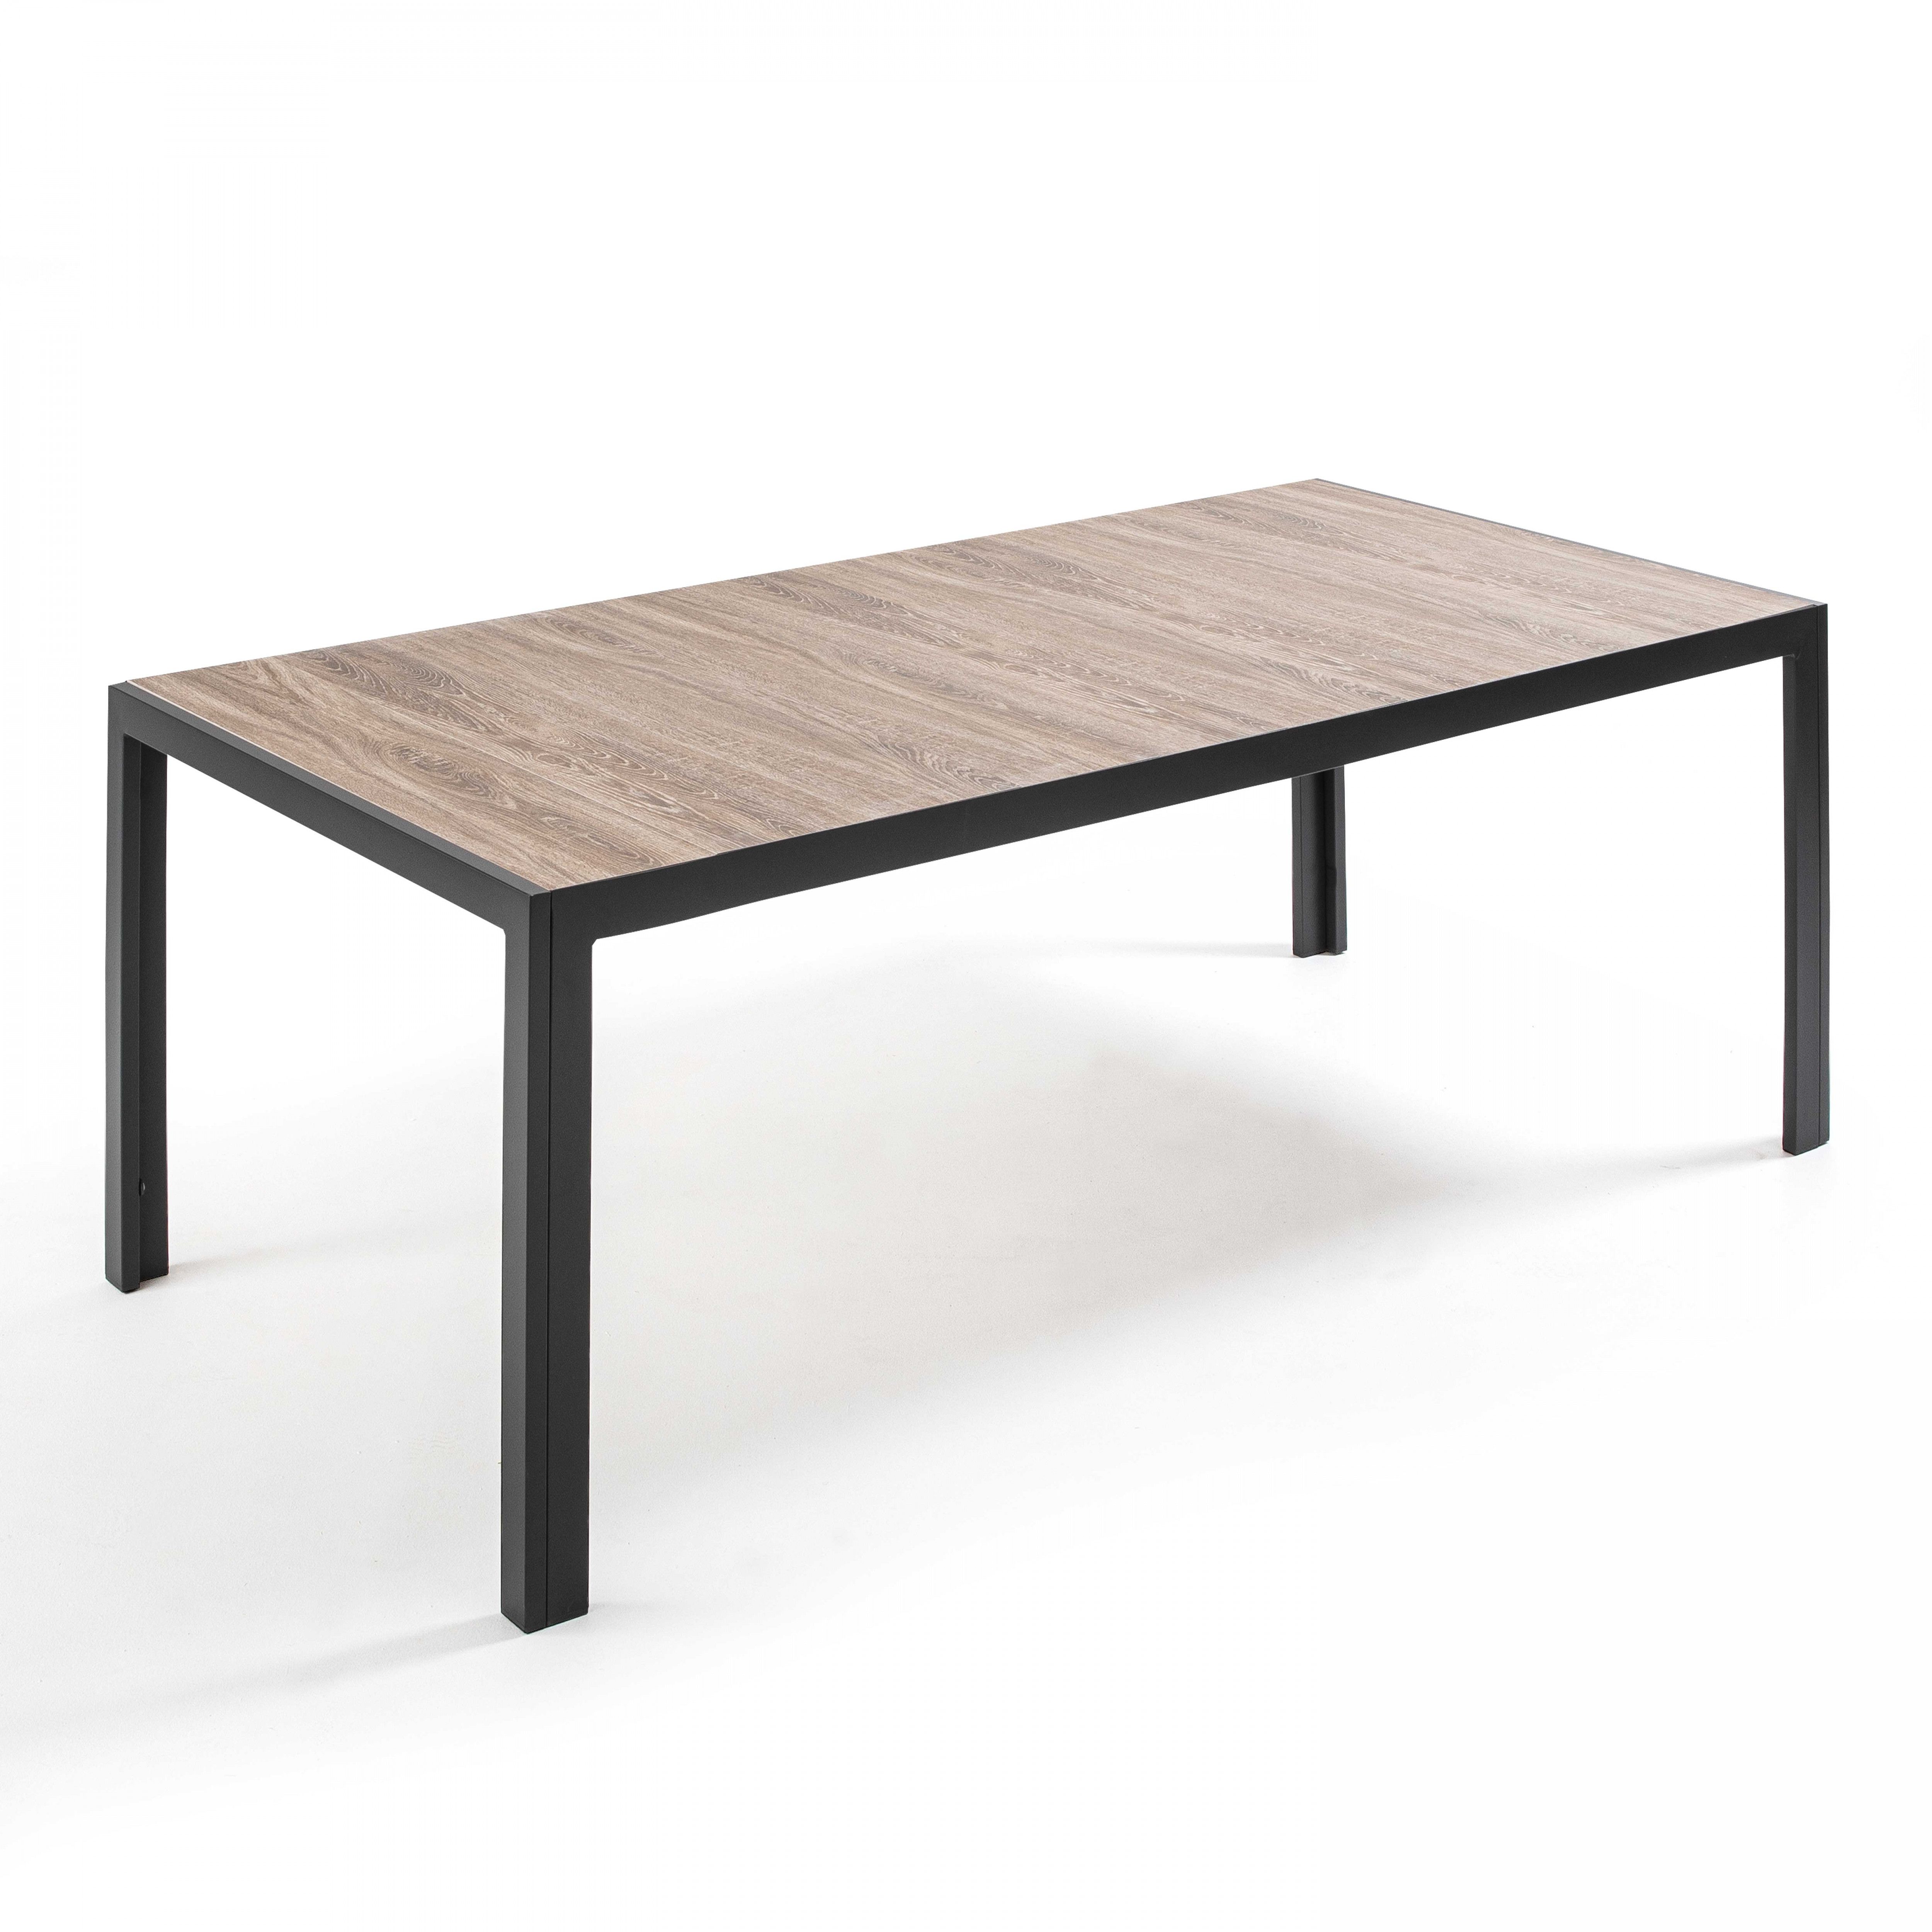 Table de jardin en aluminium et céramique effet bois (206 x 100 x 74,5 cm)